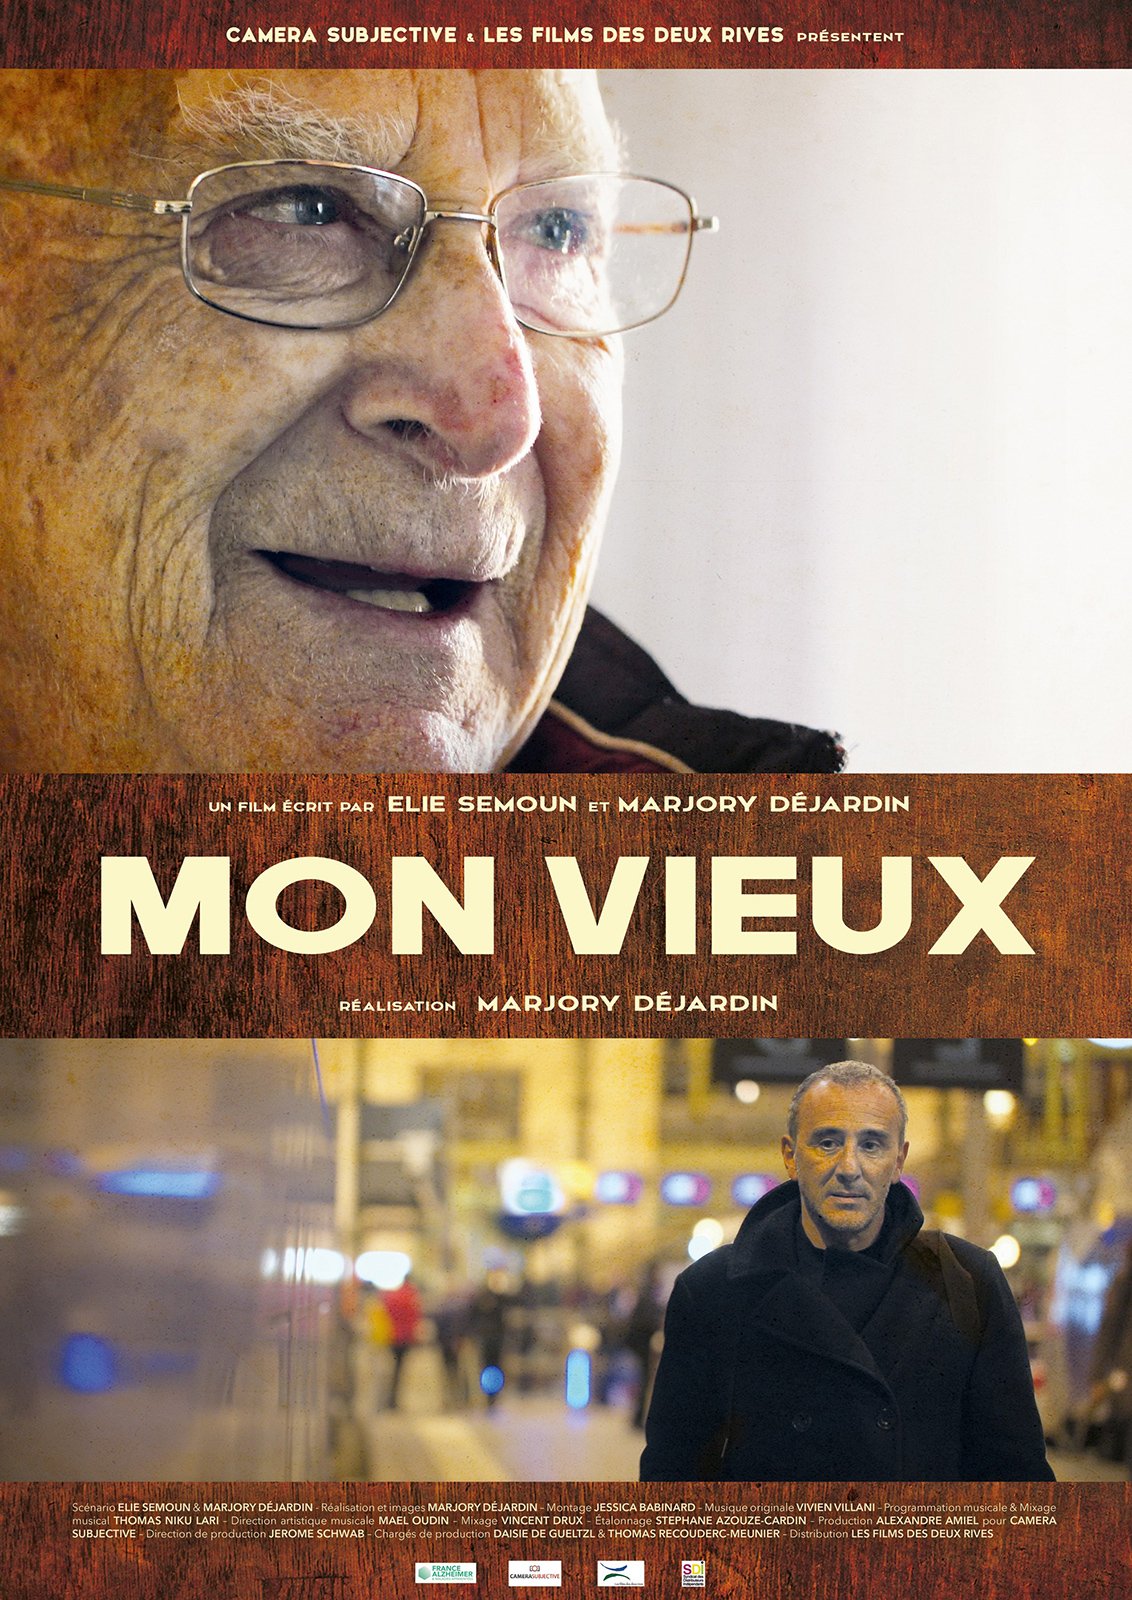 Echange avec la réalisatrice Marjory Dejardin, ce soir, après le documentaire MON VIEUX